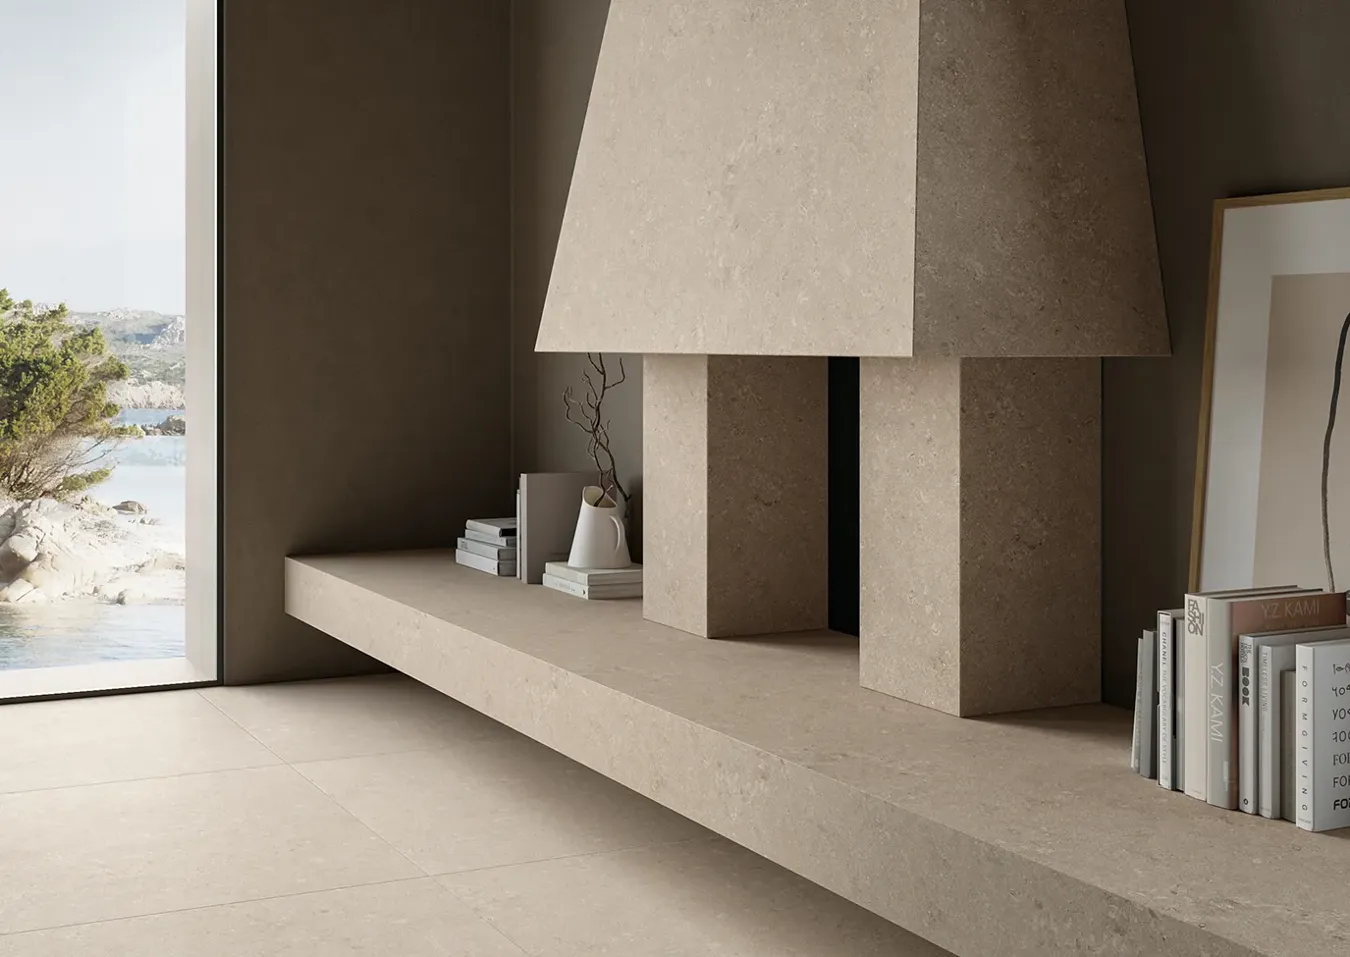 Современный интерьер с камином, облицованным плиткой под слоновую кость, минималистичной мебелью и панорамным видом.